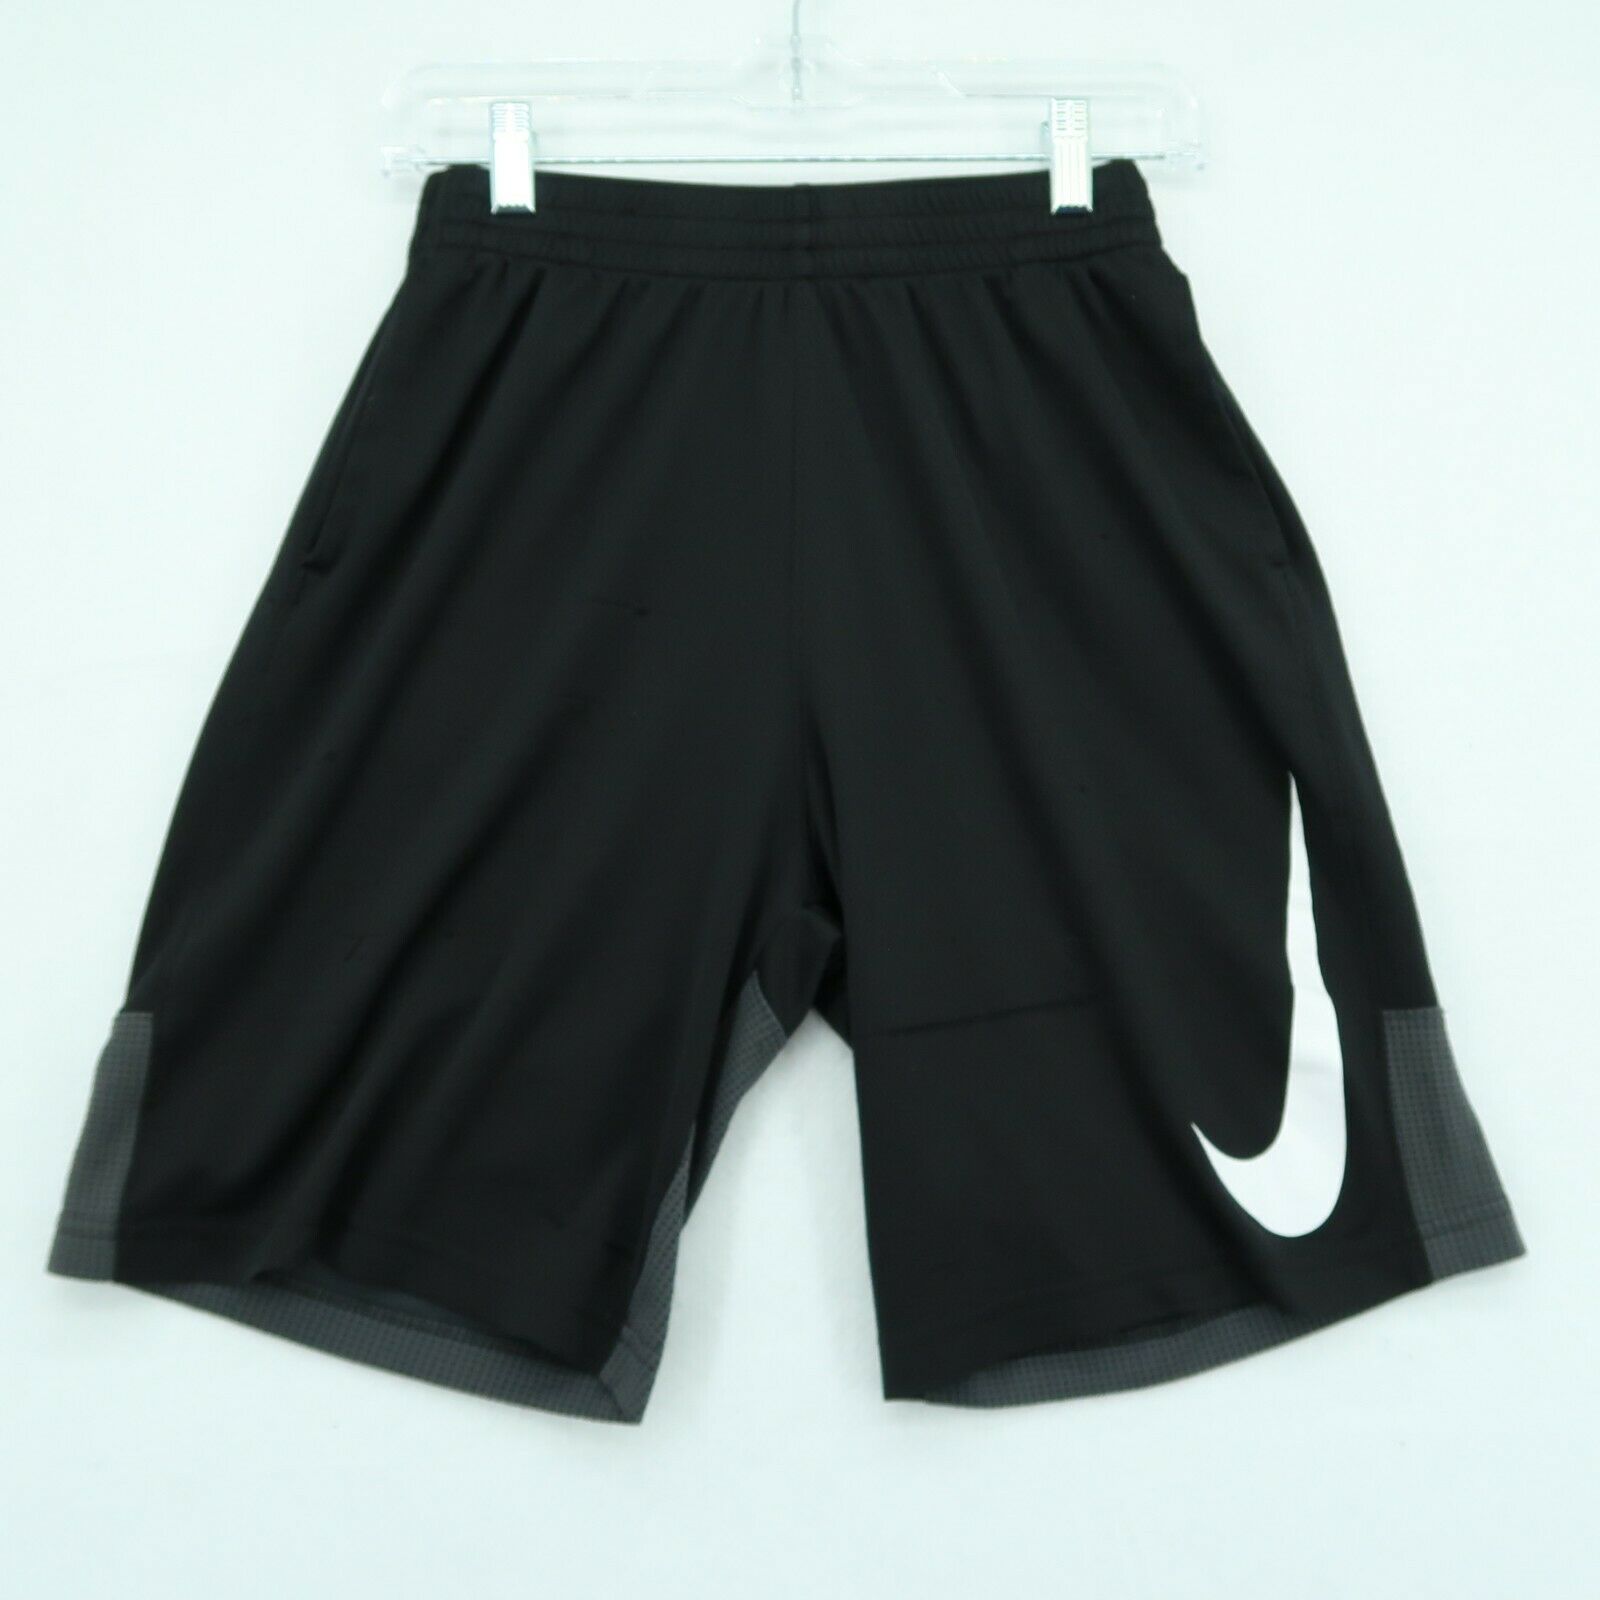 Nike Activewear Shorts Youth Boys Xl Drifit Black With Big White Swoosh